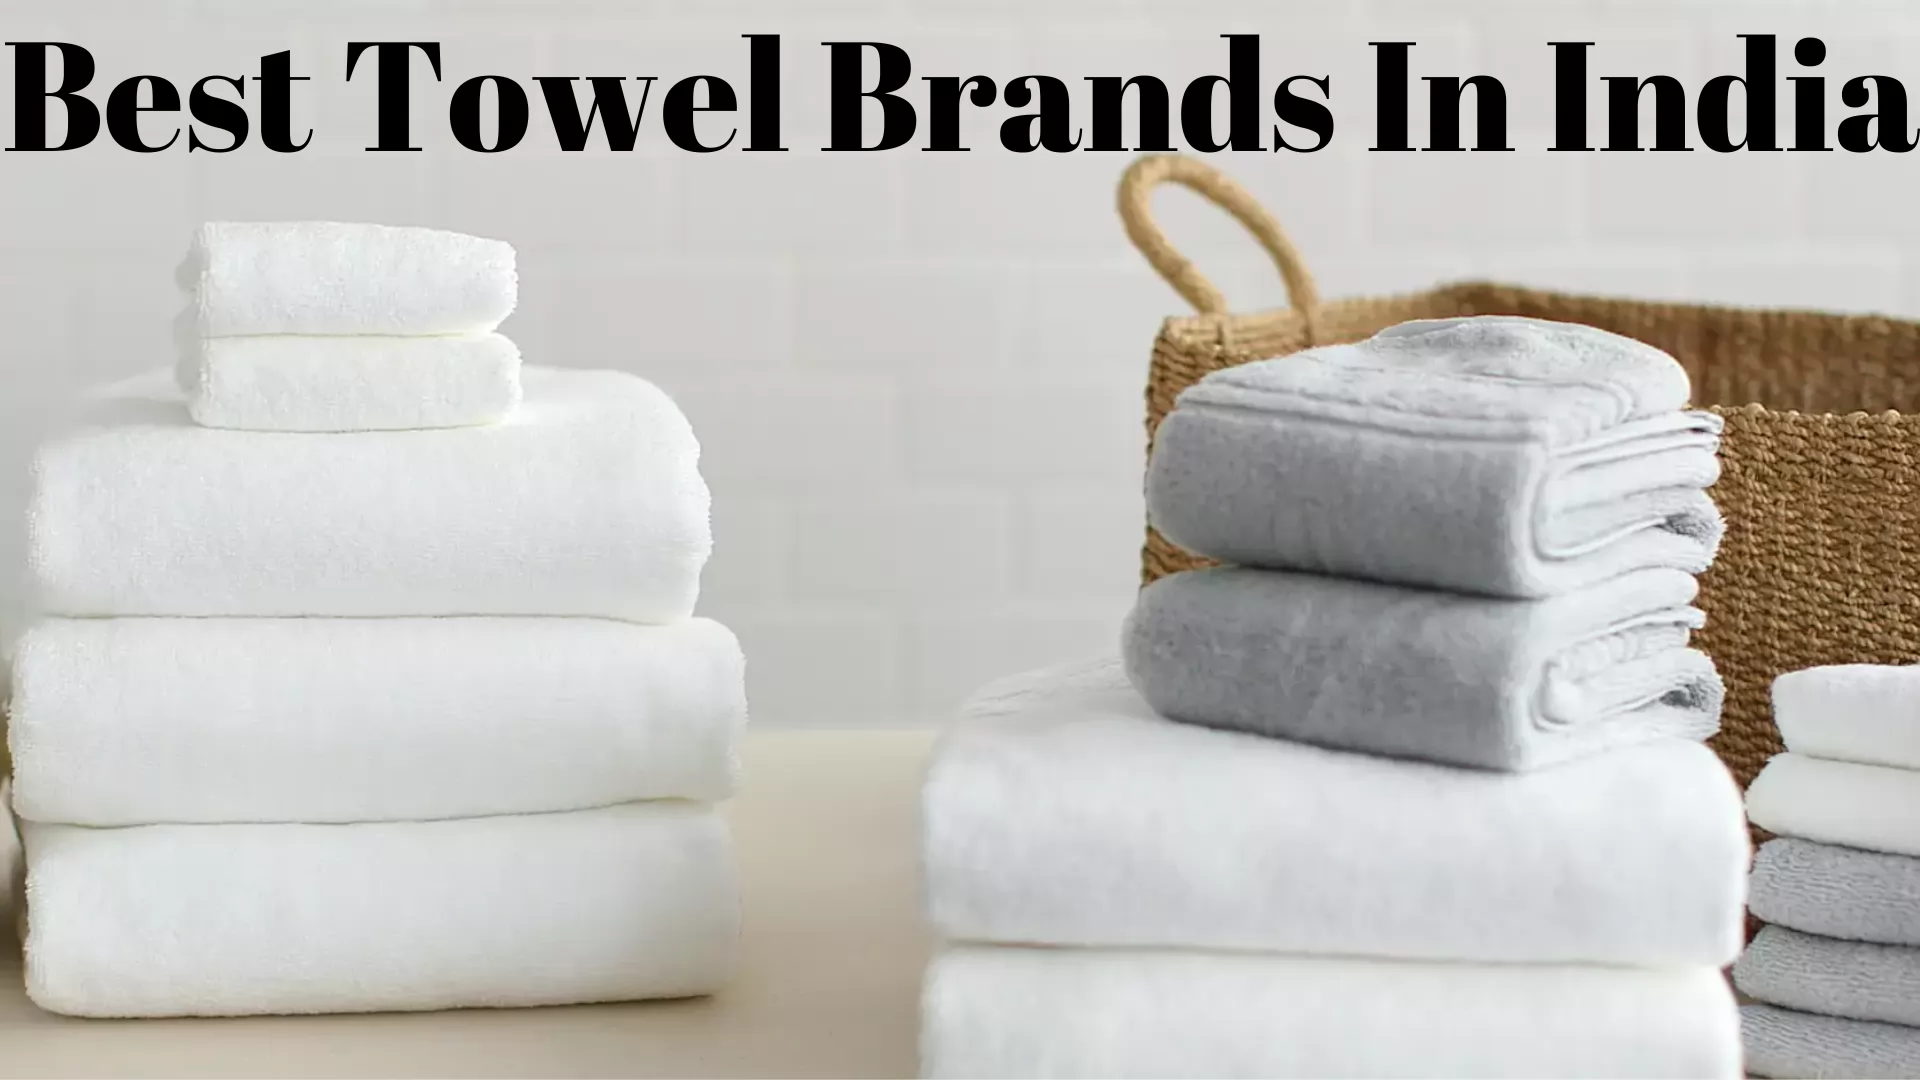 Best Towel Brands in India